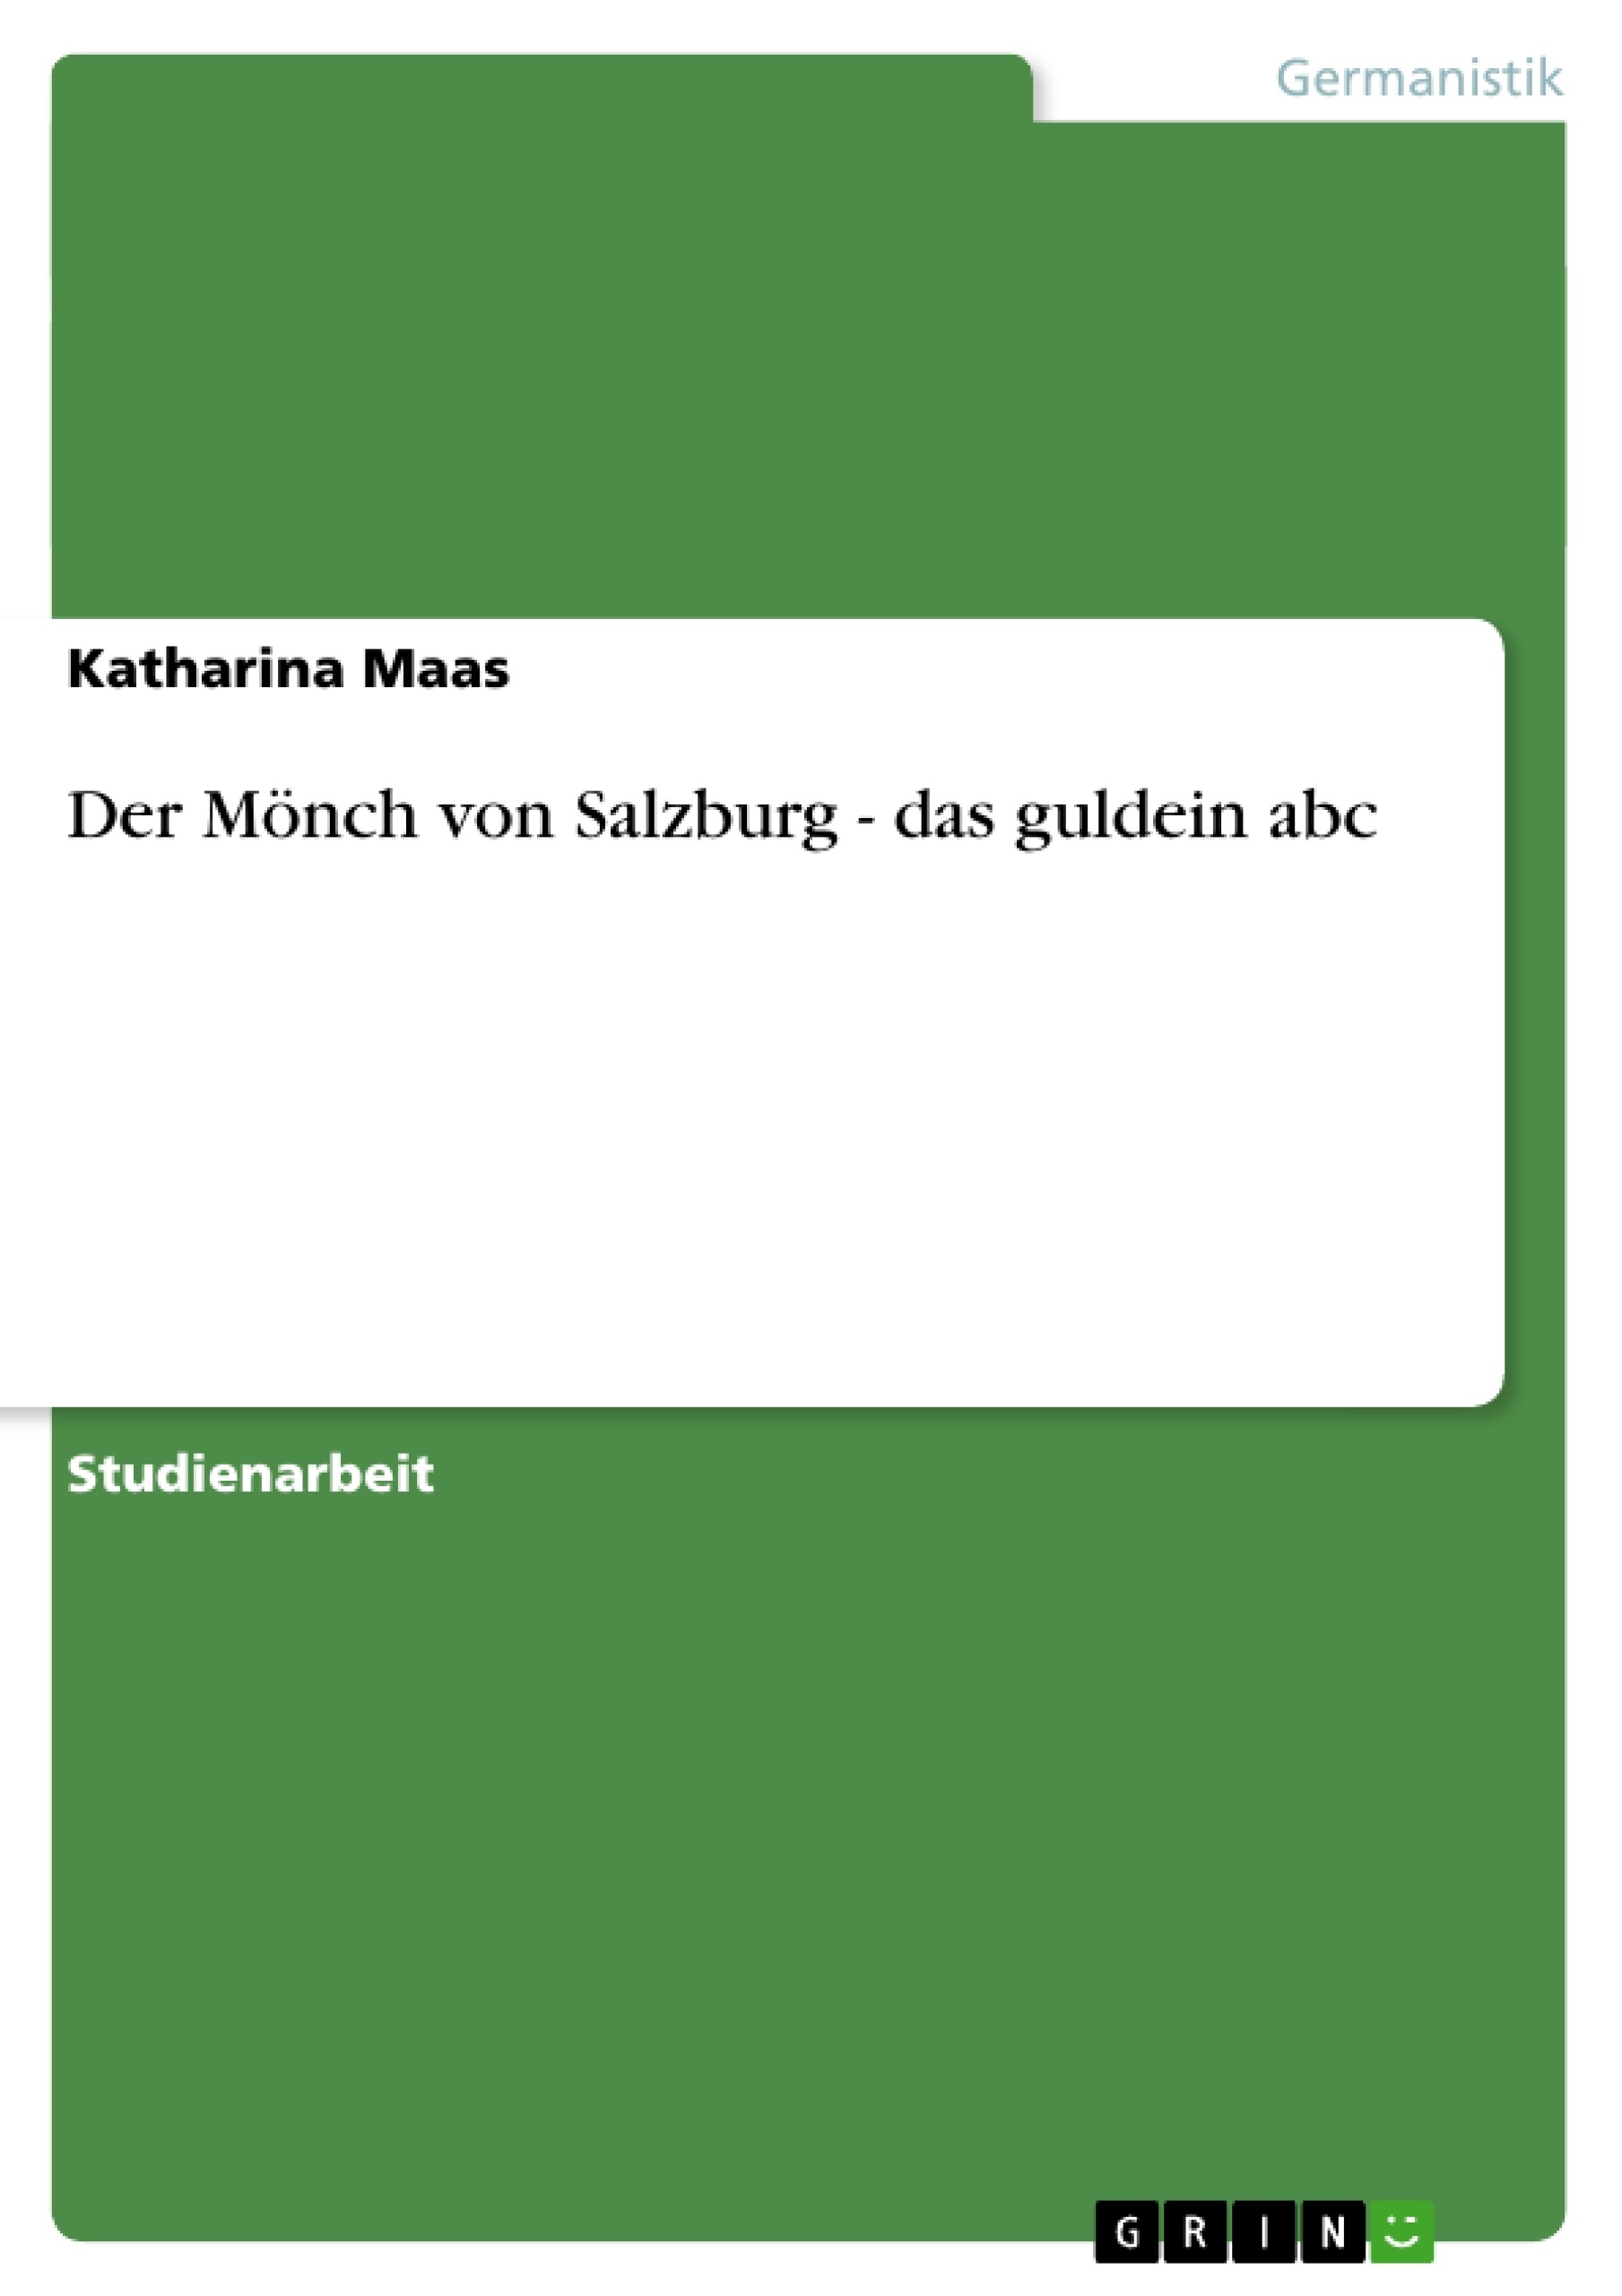 Title: Der Mönch von Salzburg - das guldein abc